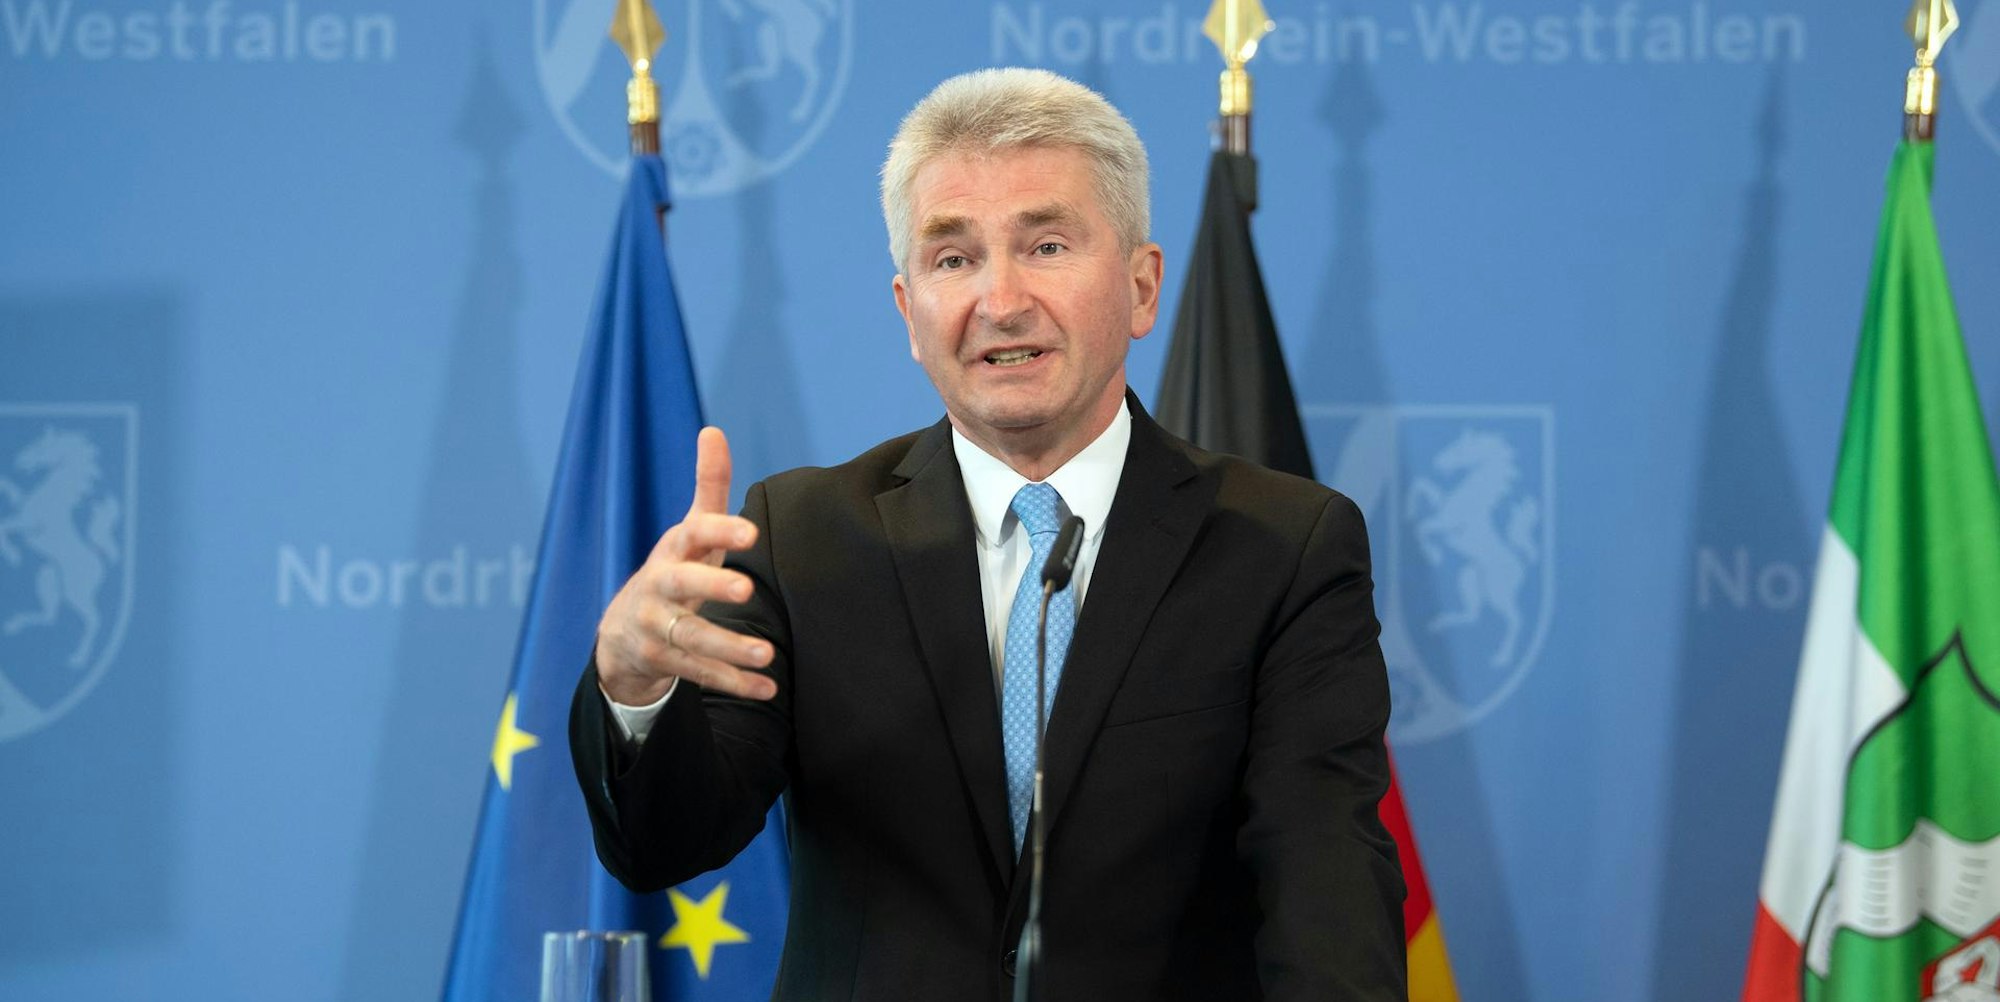 NRW-Wirtschaftsminister Andreas Pinkwart